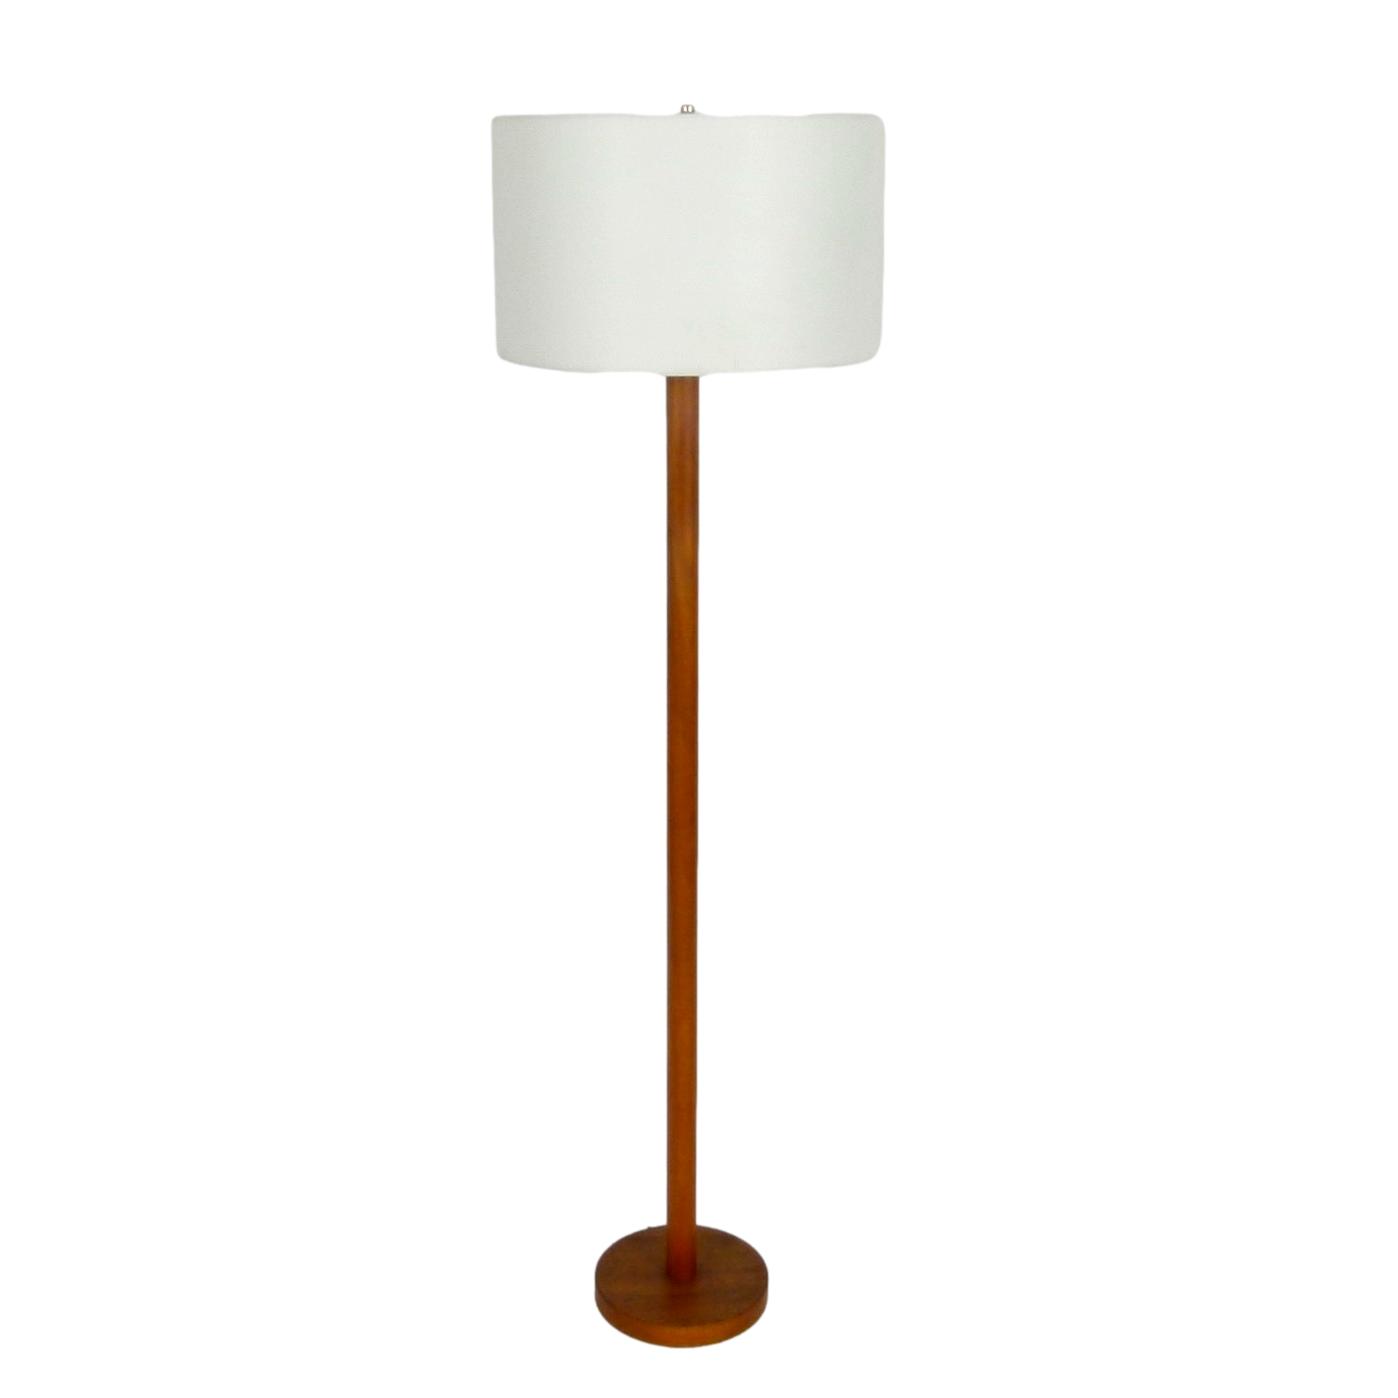 Teak Floor Lamp From Denmark City Atlanta